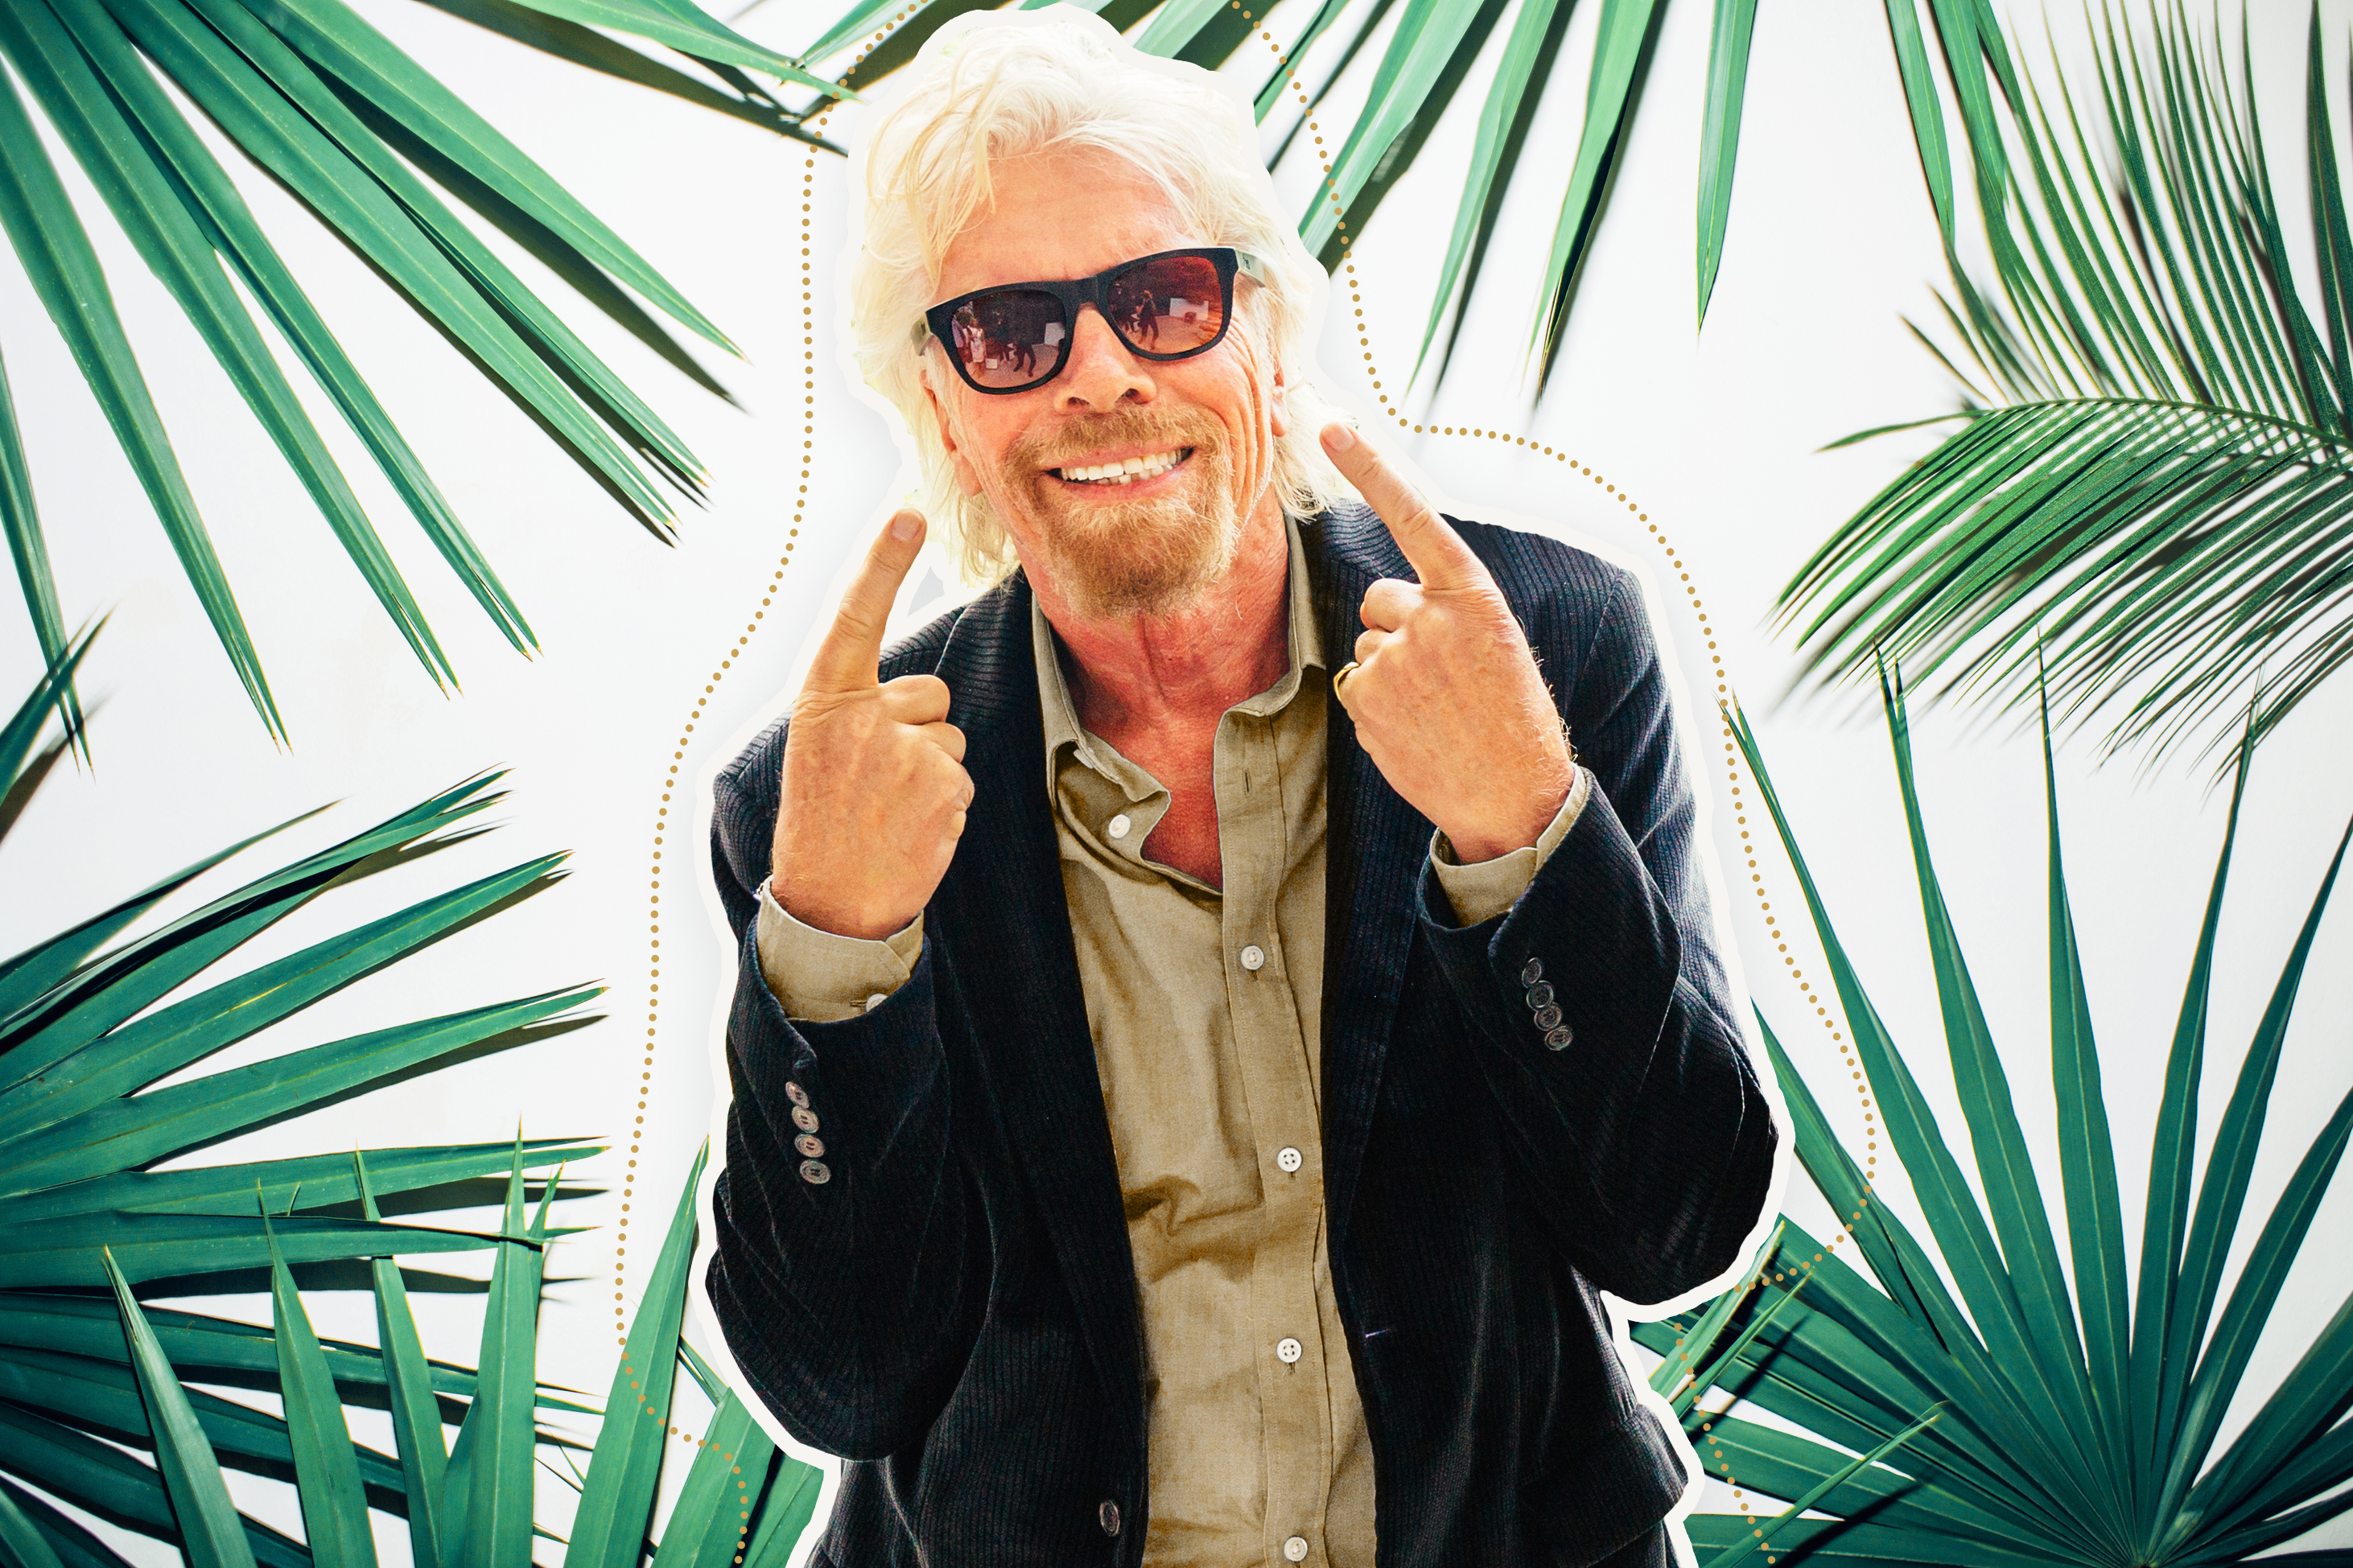 Richard Branson has endorsed a north sunglasses company